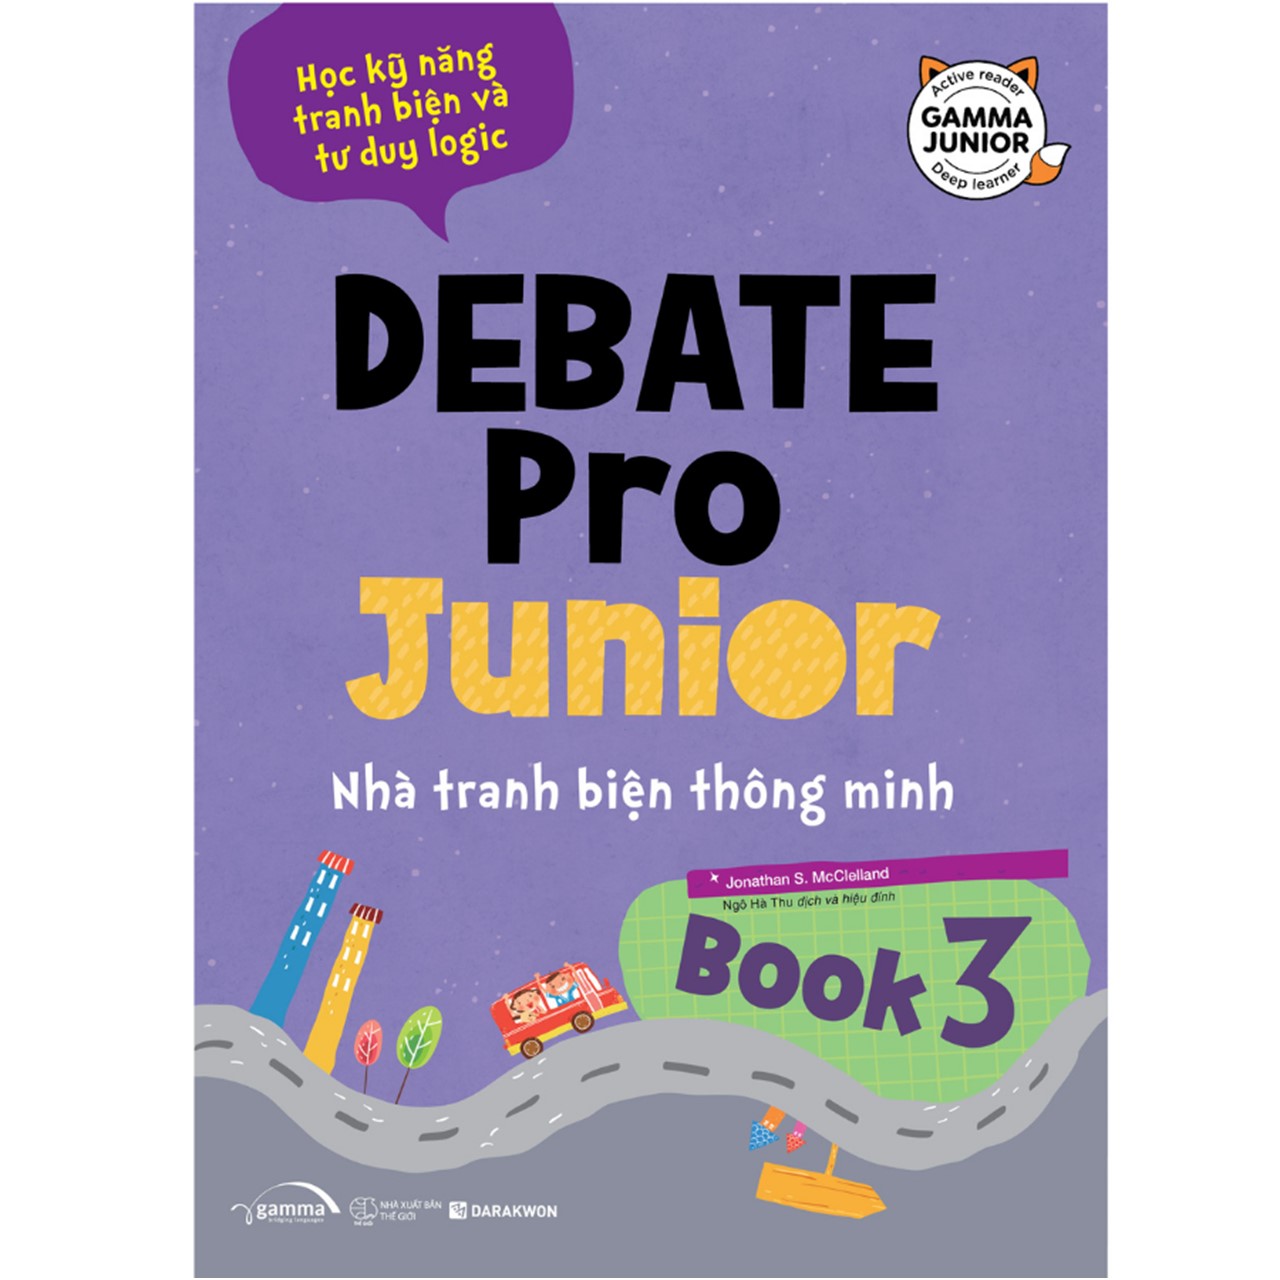 Combo Debate Pro Junior 3 + 4 - Nhà Tranh Biện Thông Minh